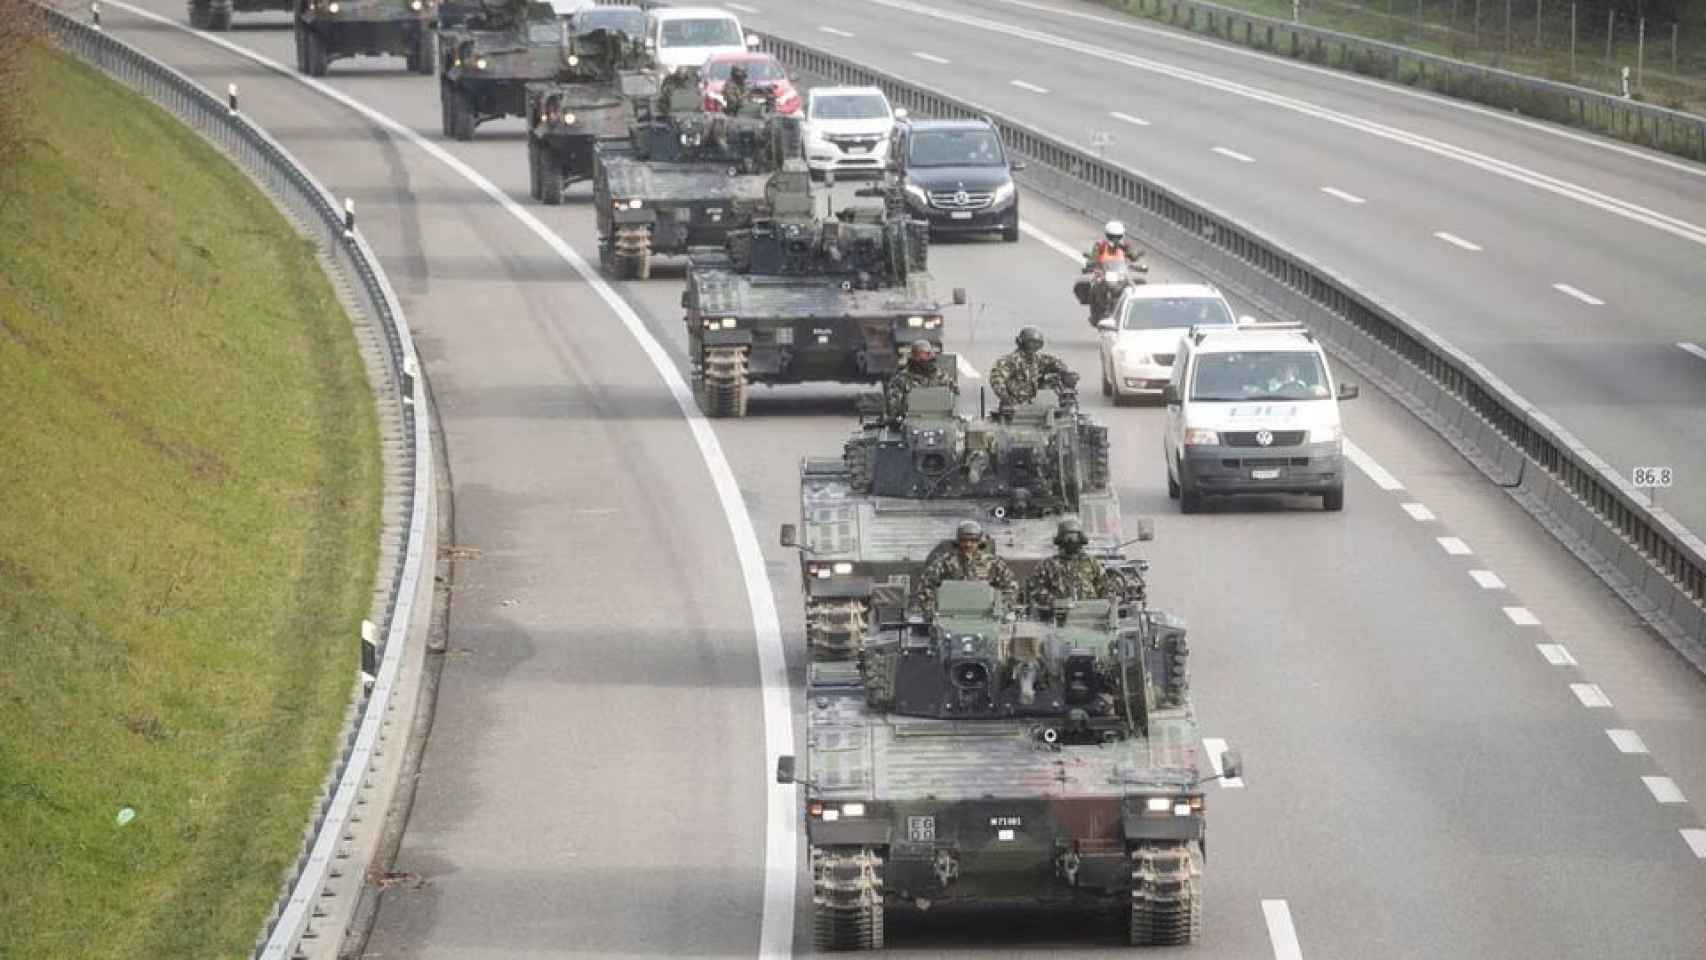 Vehículos blindados del ejército suizo participan en un ejercicio militar cerca de Othmarsingen, Suiza.